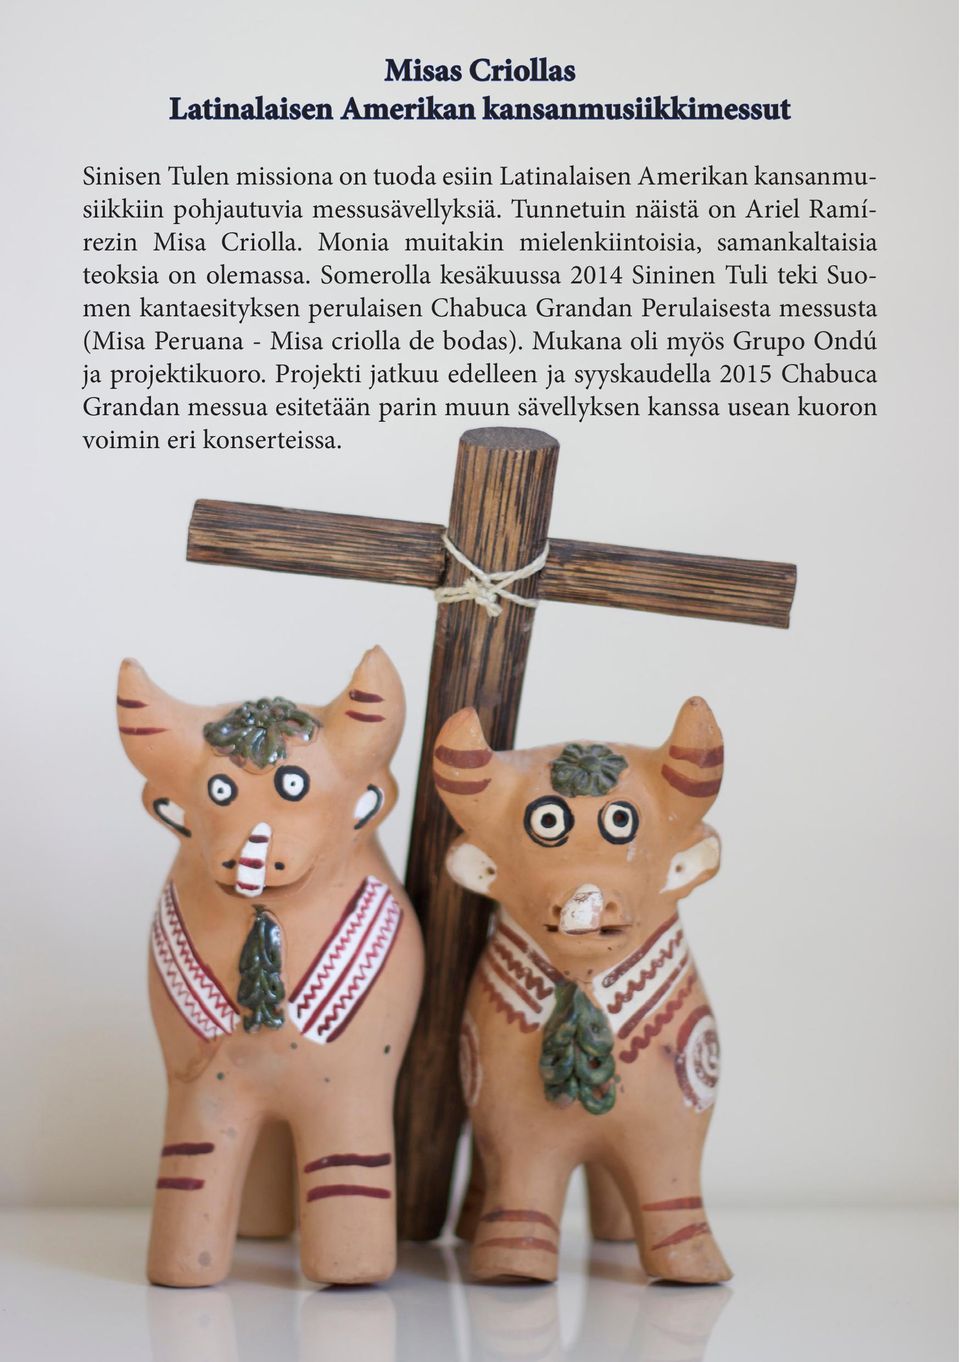 Somerolla kesäkuussa 2014 Sininen Tuli teki Suomen kantaesityksen perulaisen Chabuca Grandan Perulaisesta messusta (Misa Peruana - Misa criolla de bodas).